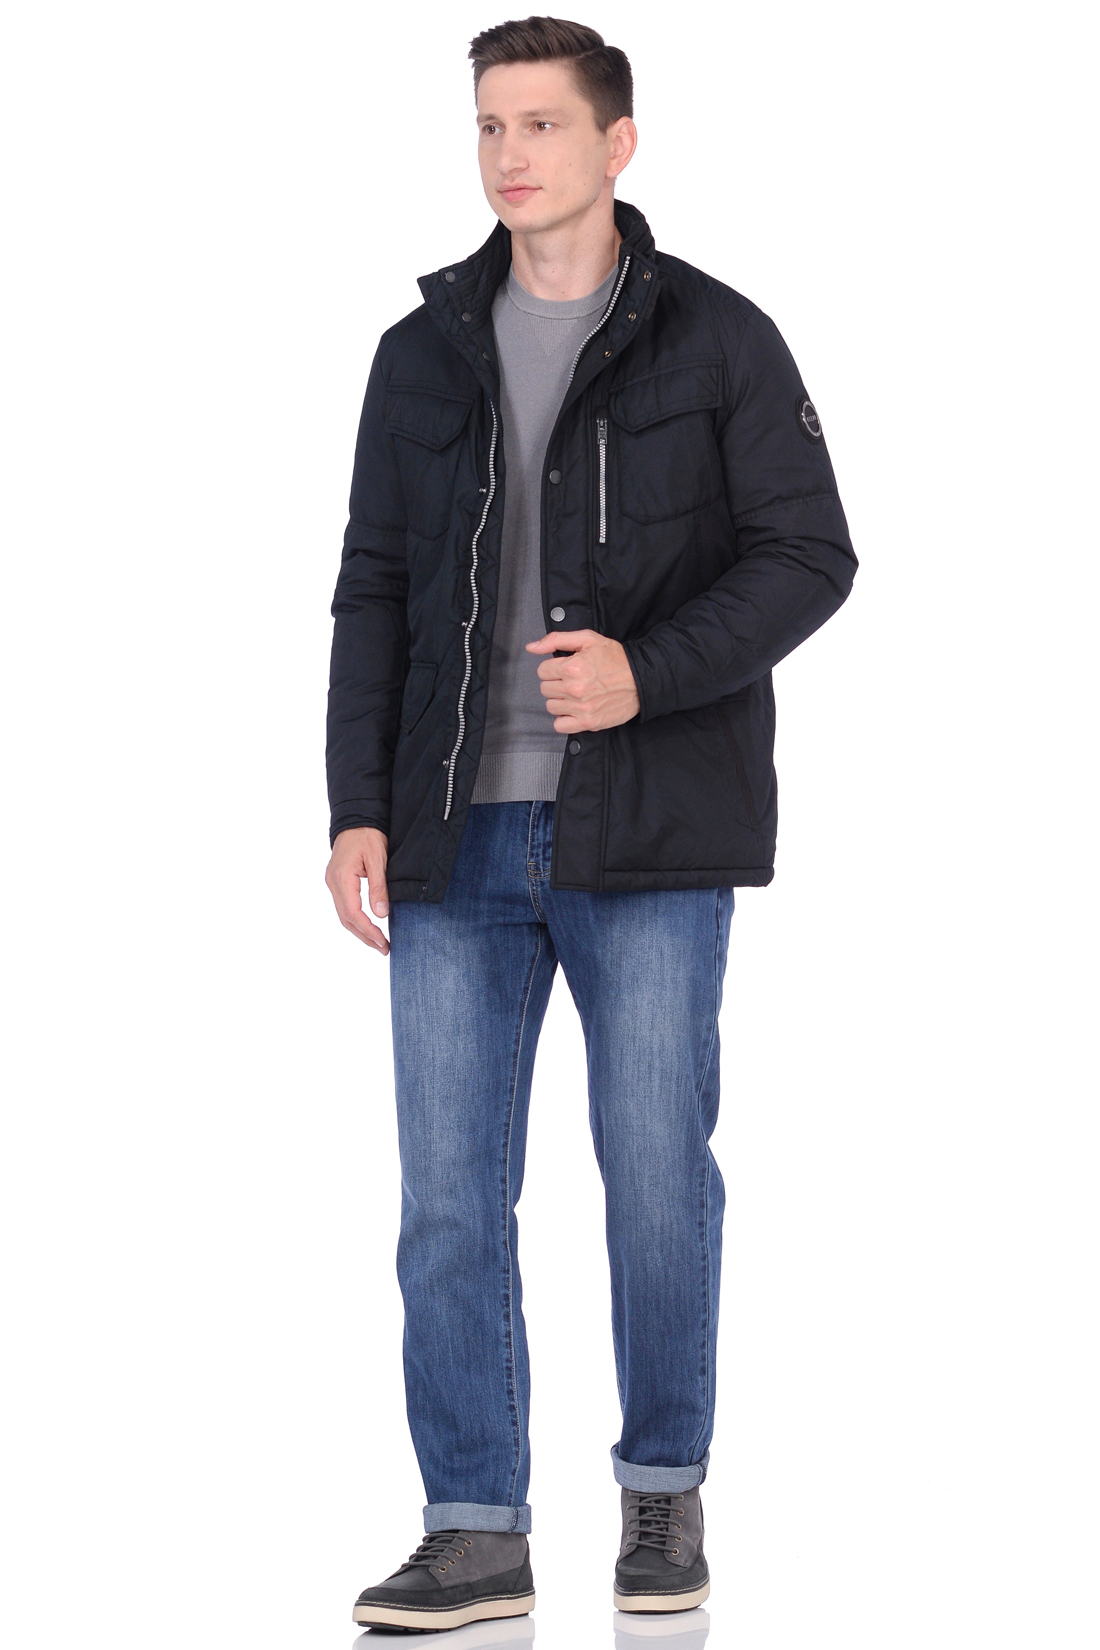 Куртка эргономичного кроя (арт. baon B538513), размер 3XL, цвет черный Куртка эргономичного кроя (арт. baon B538513) - фото 4